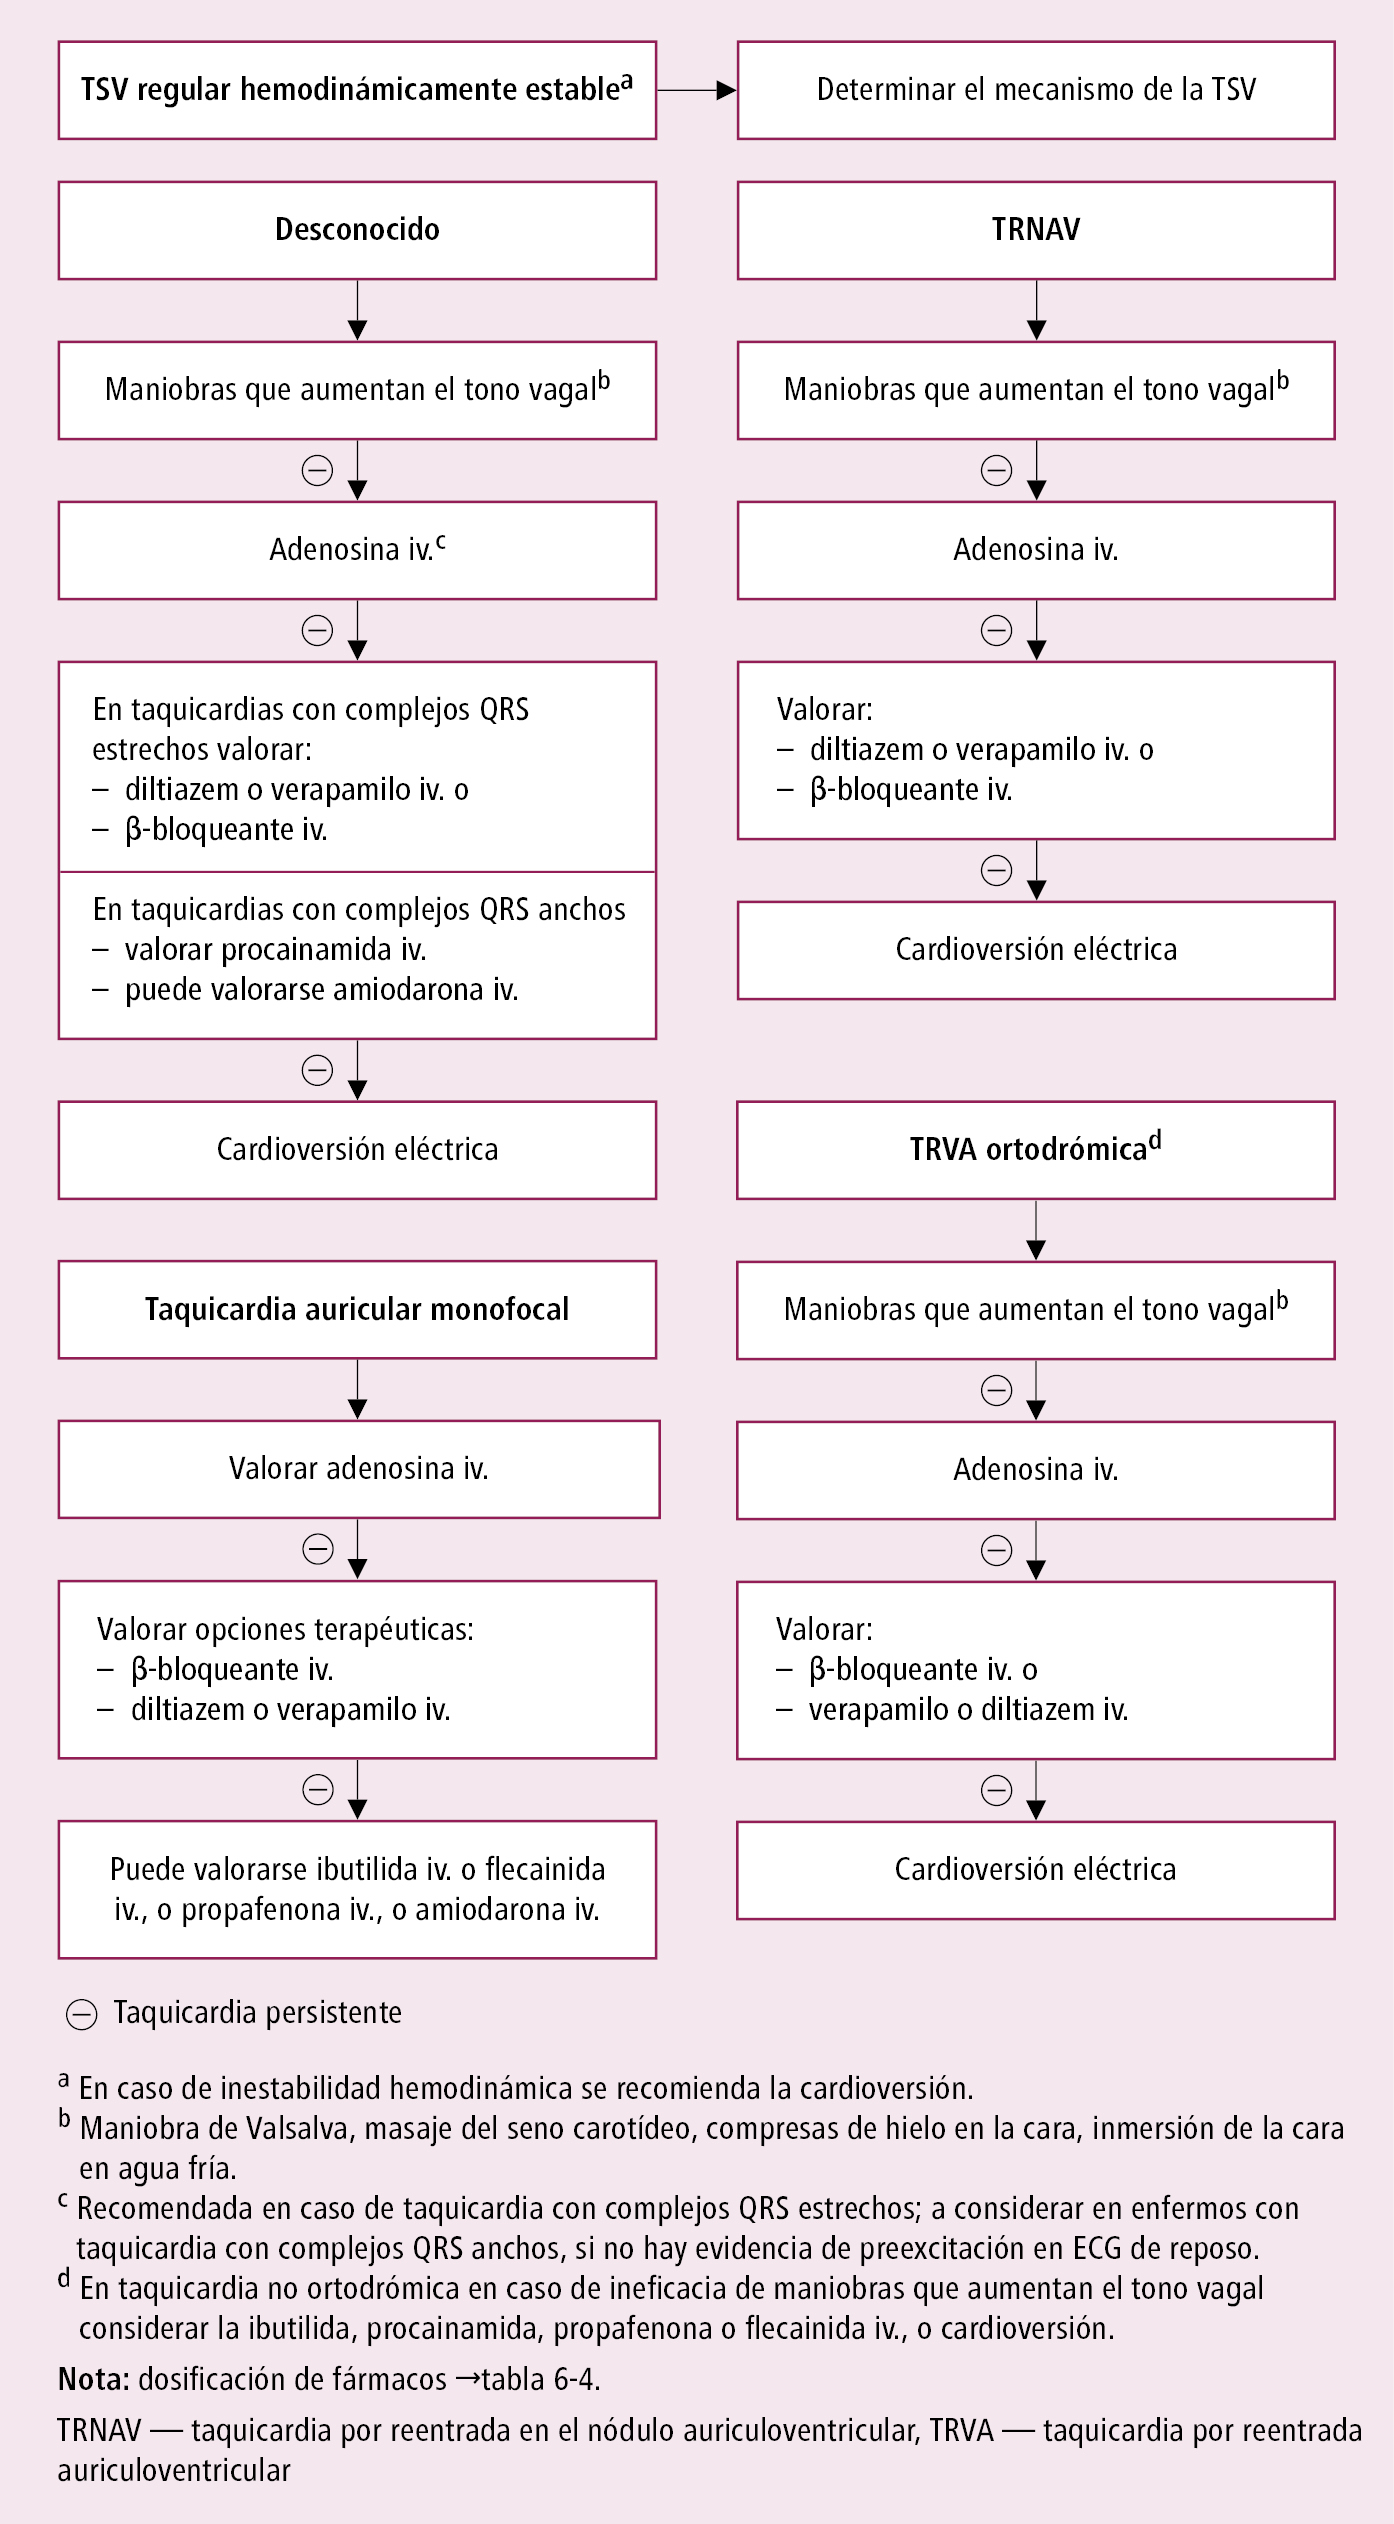    Fig. 2.6-4.  Tratamiento de emergencia de la taquicardia supraventricular (TVS) regular hemodinámicamente estable (a partir de las guías ESC 2019, modificado) 